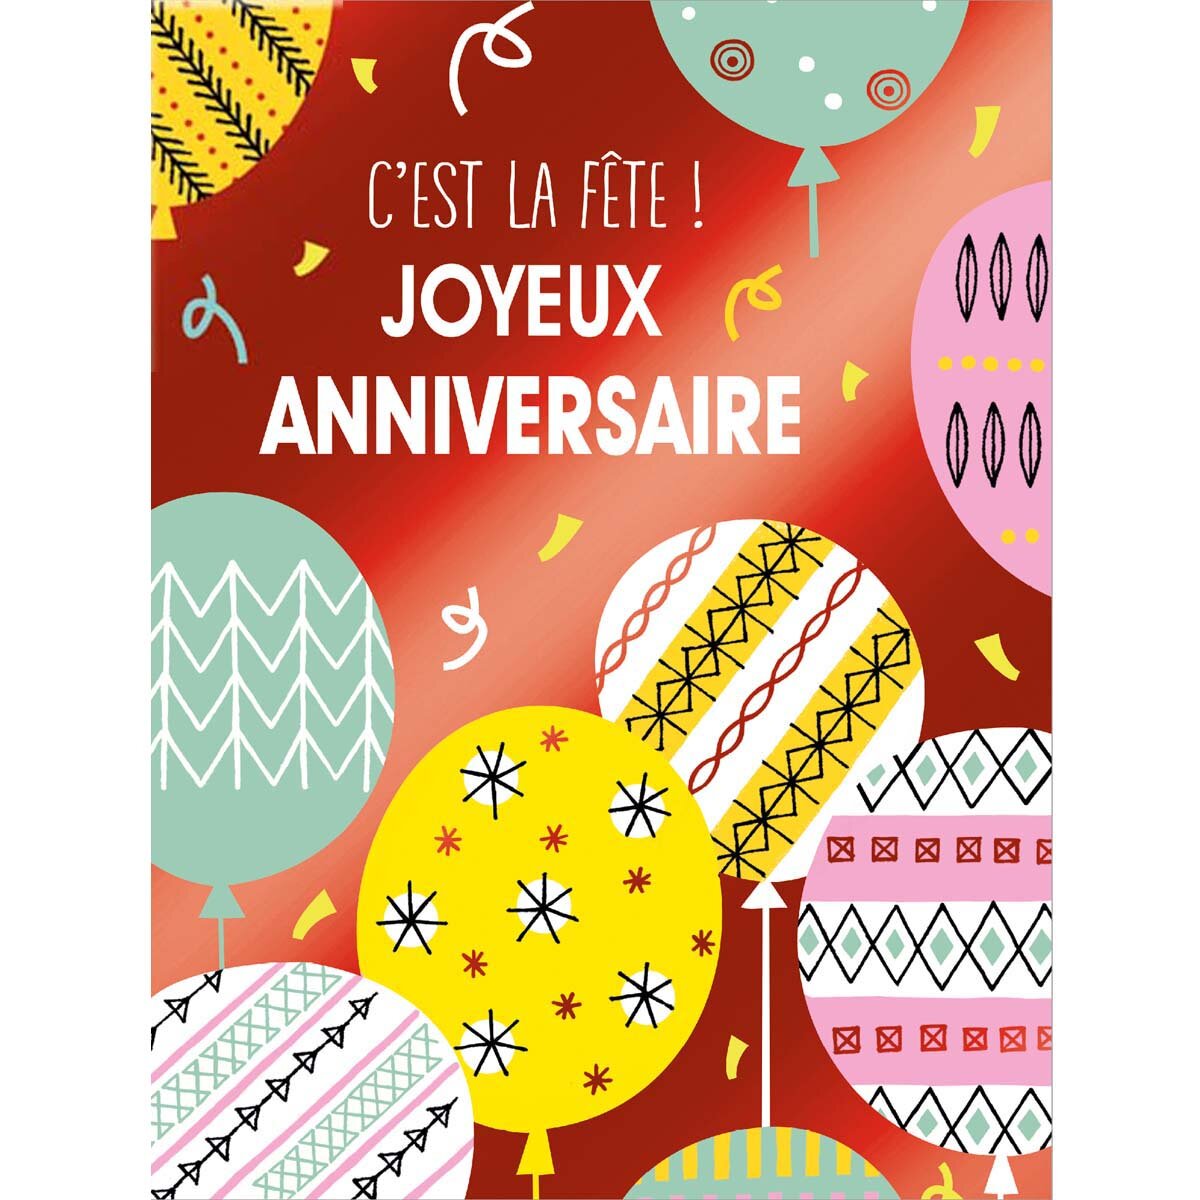 Grande carte anniversaire c'est la fête - draeger paris - La Poste